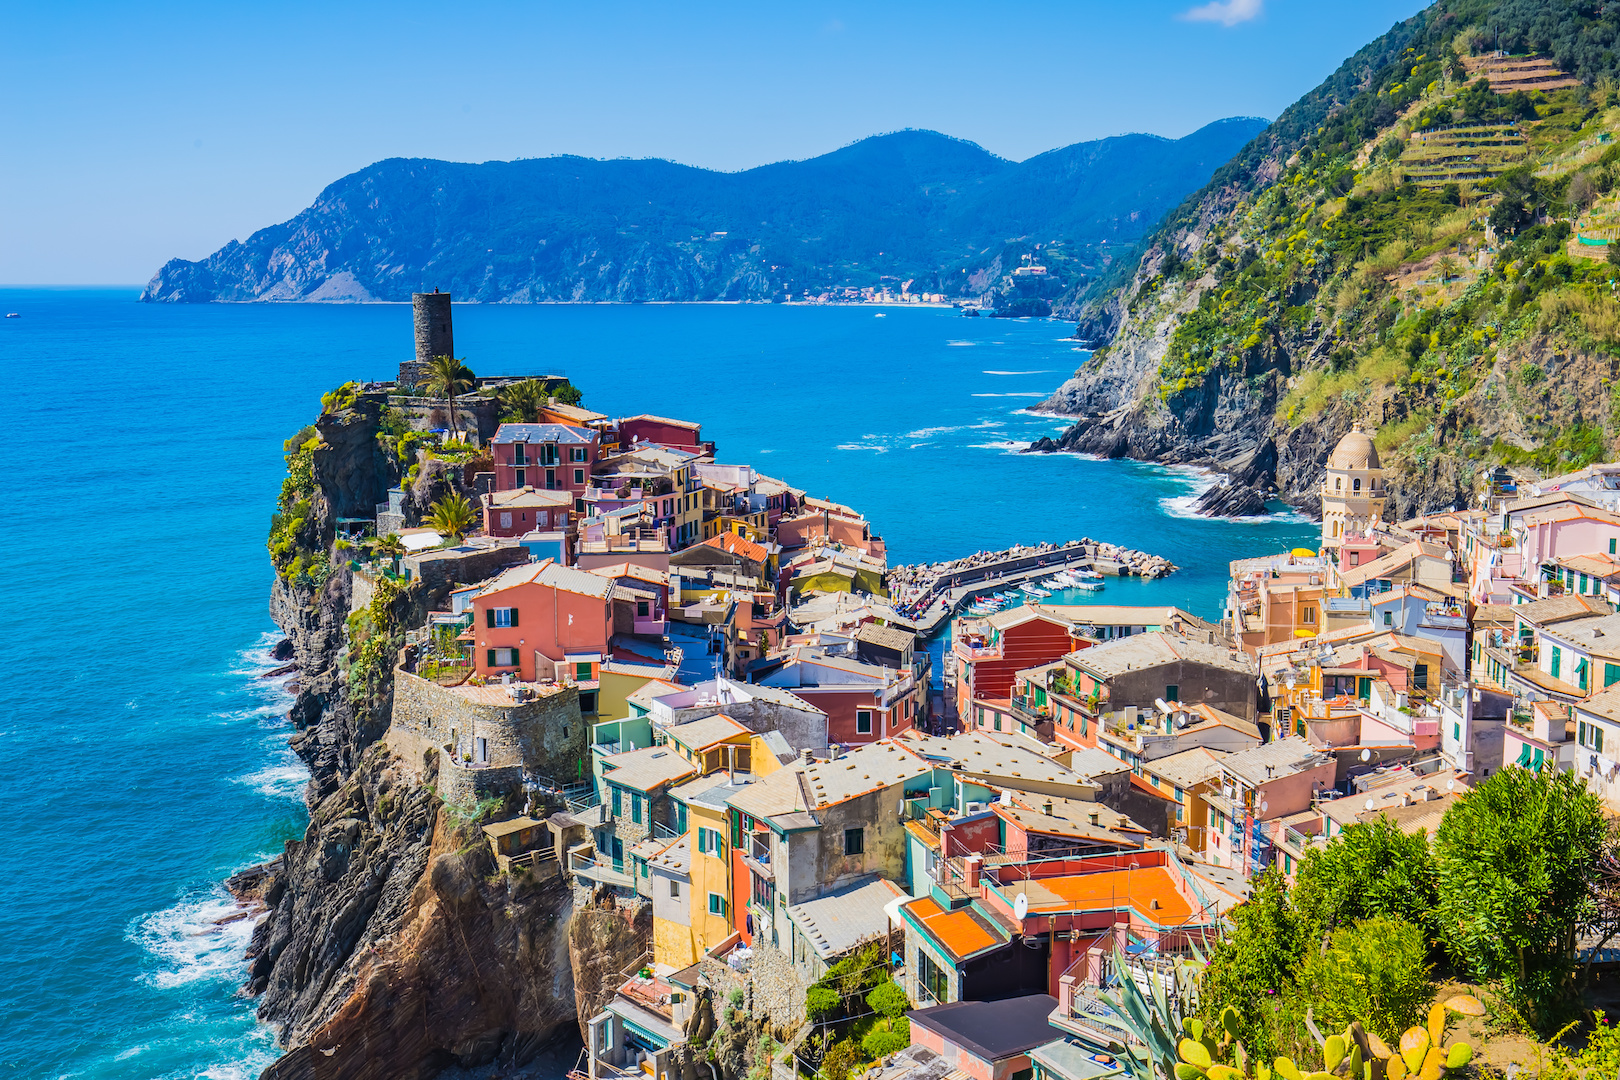 Cinque Terre patikointimatka - matkat Liguriaan, Italia